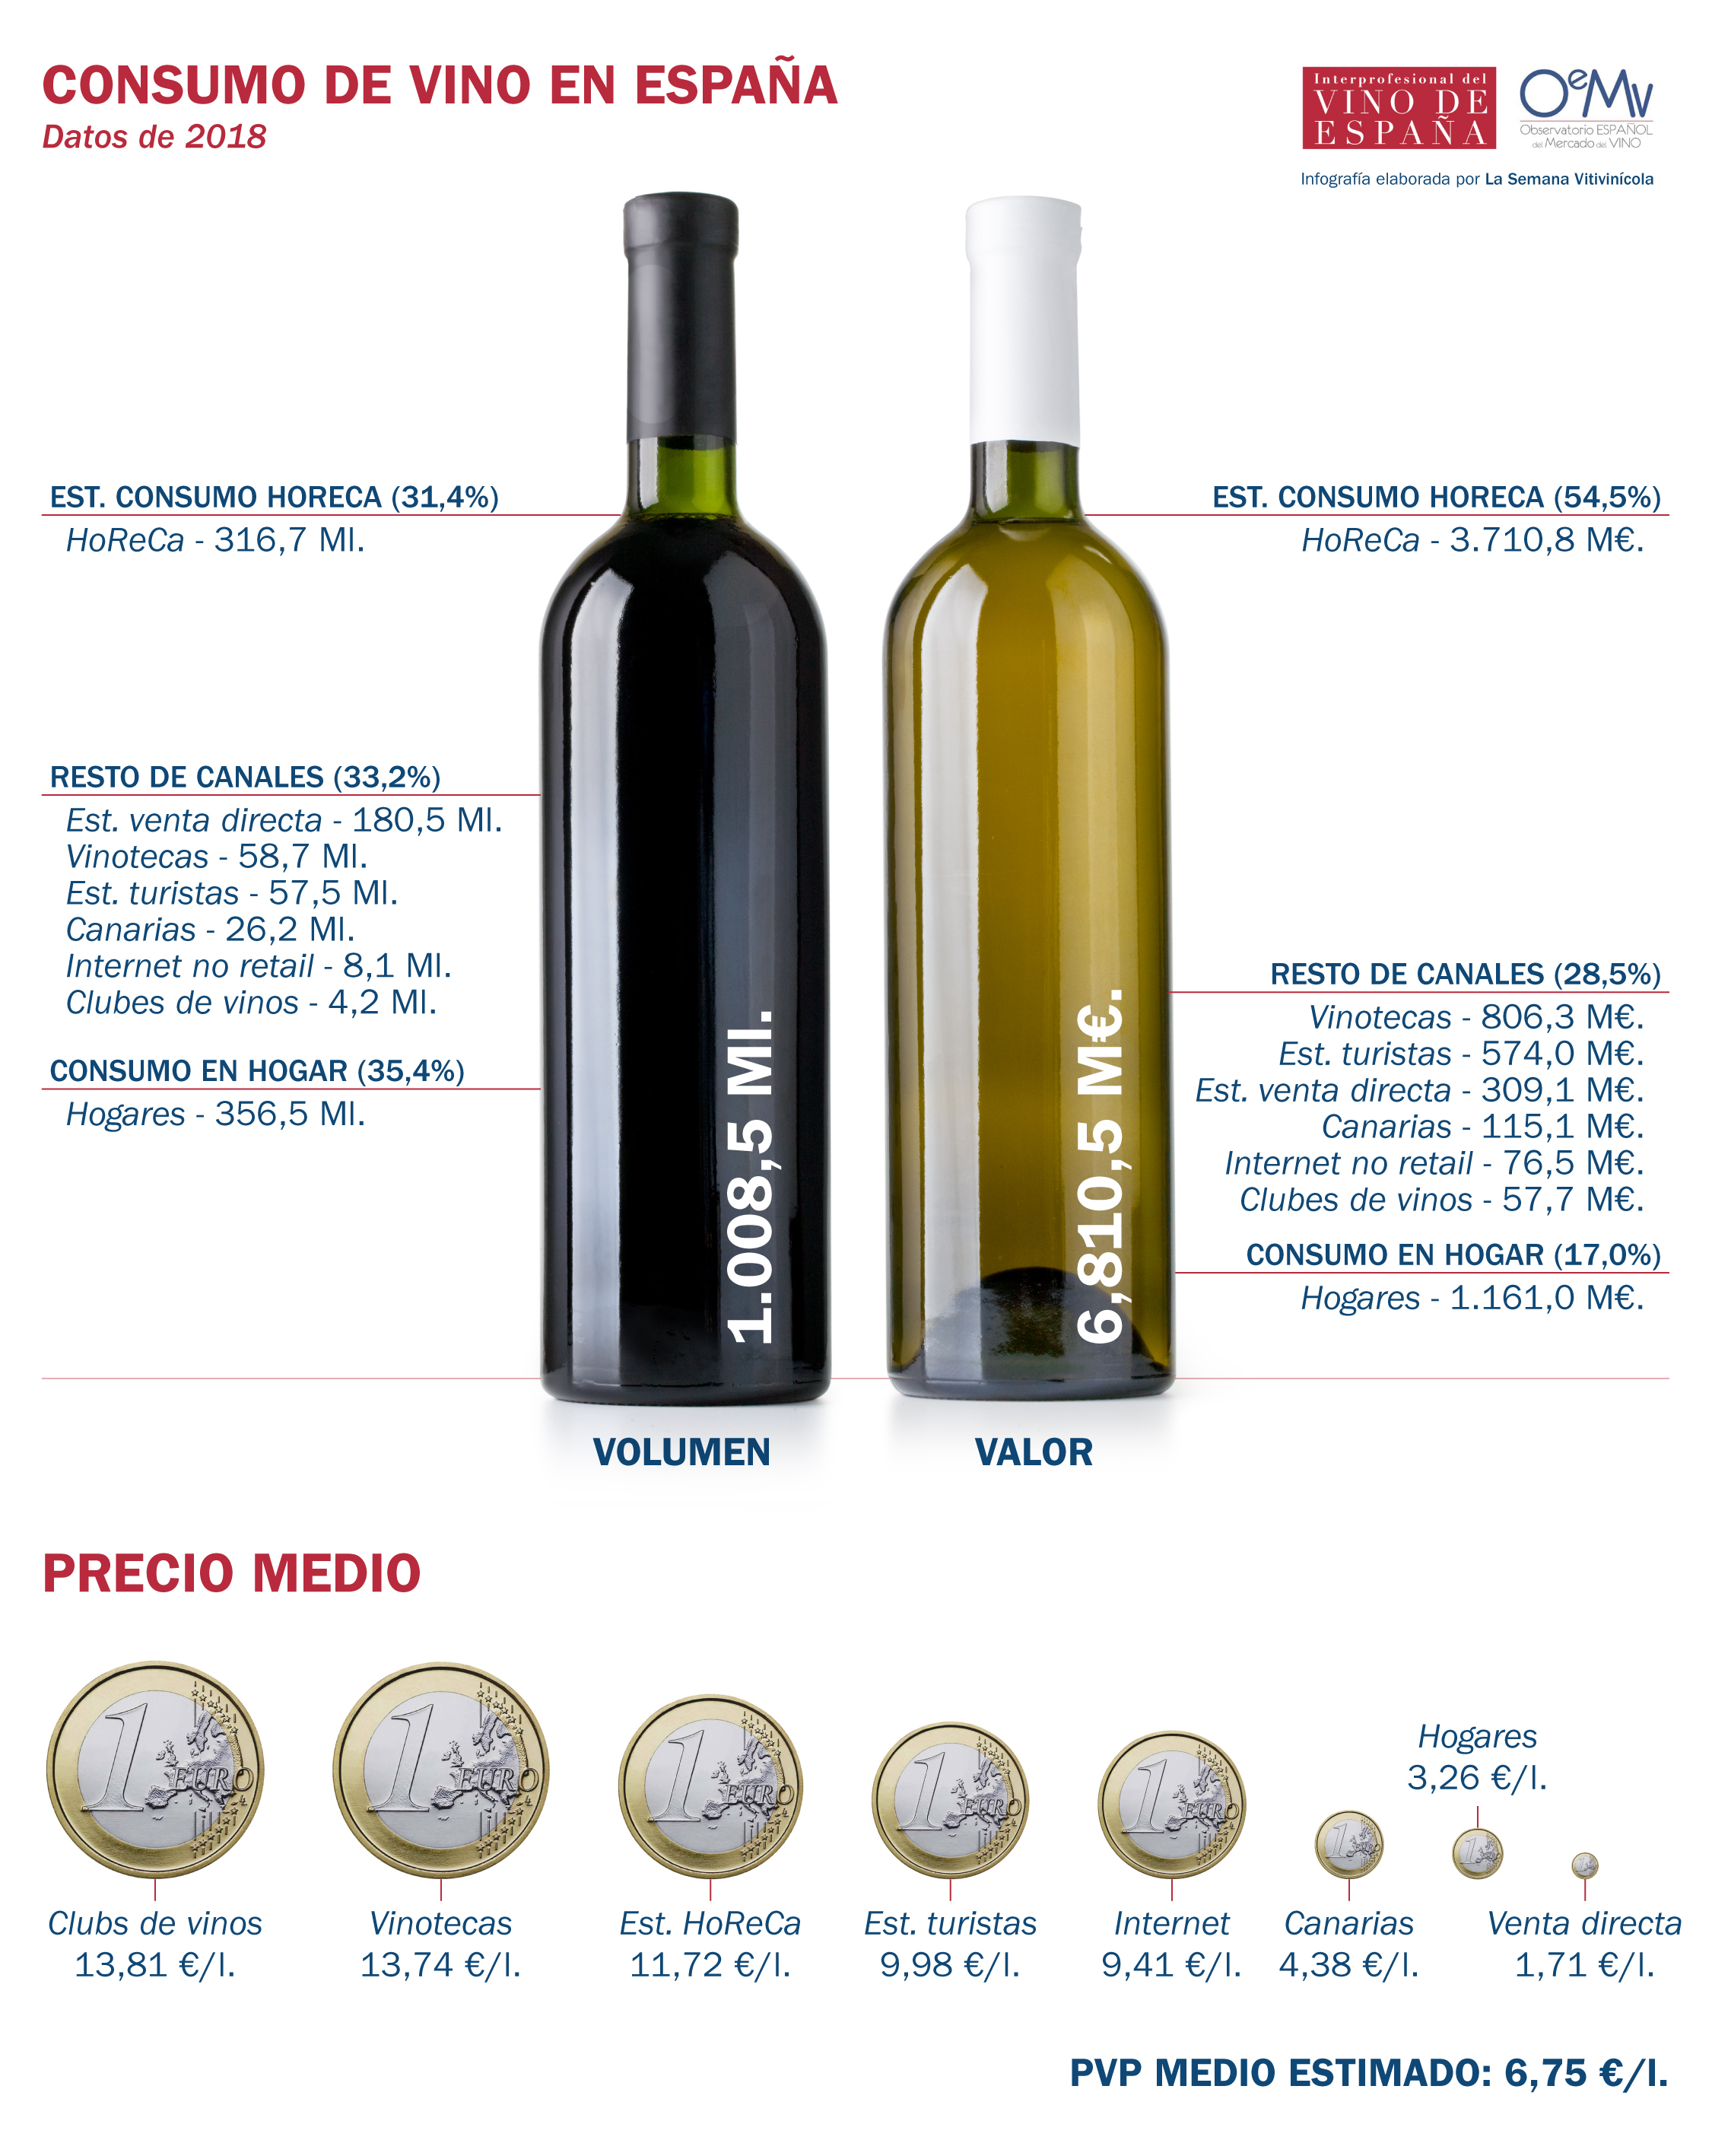 El consumo de vino en España gana terreno en canales cada vez más complejos y diversificados. Radiografía del consumo de vino en España Previo Crisis COVID-19